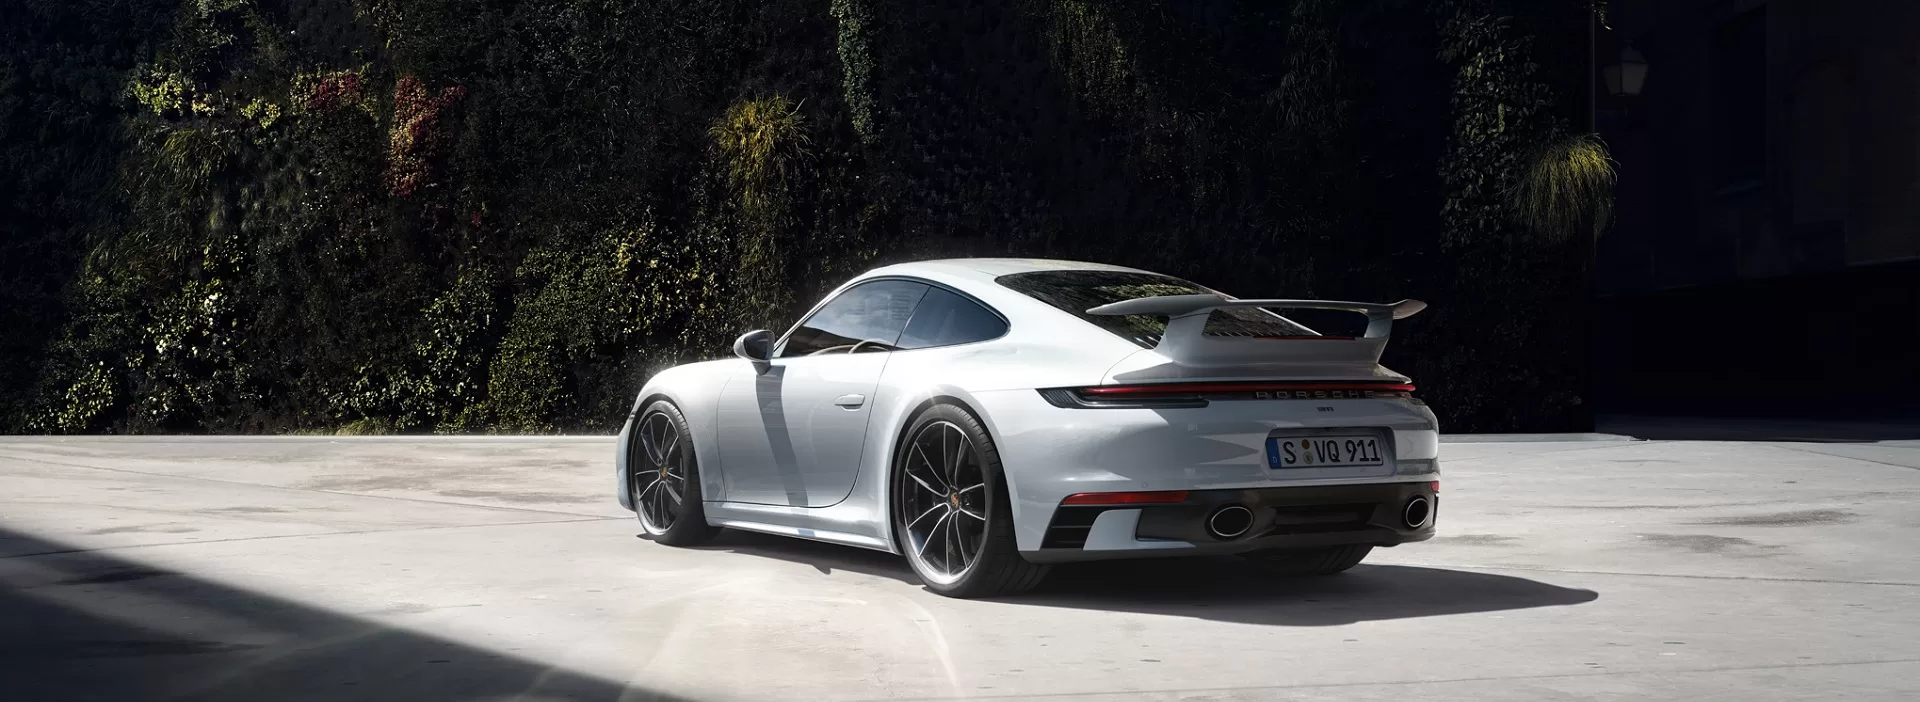 Икона дизайна и технологичности - новый Porsche 911